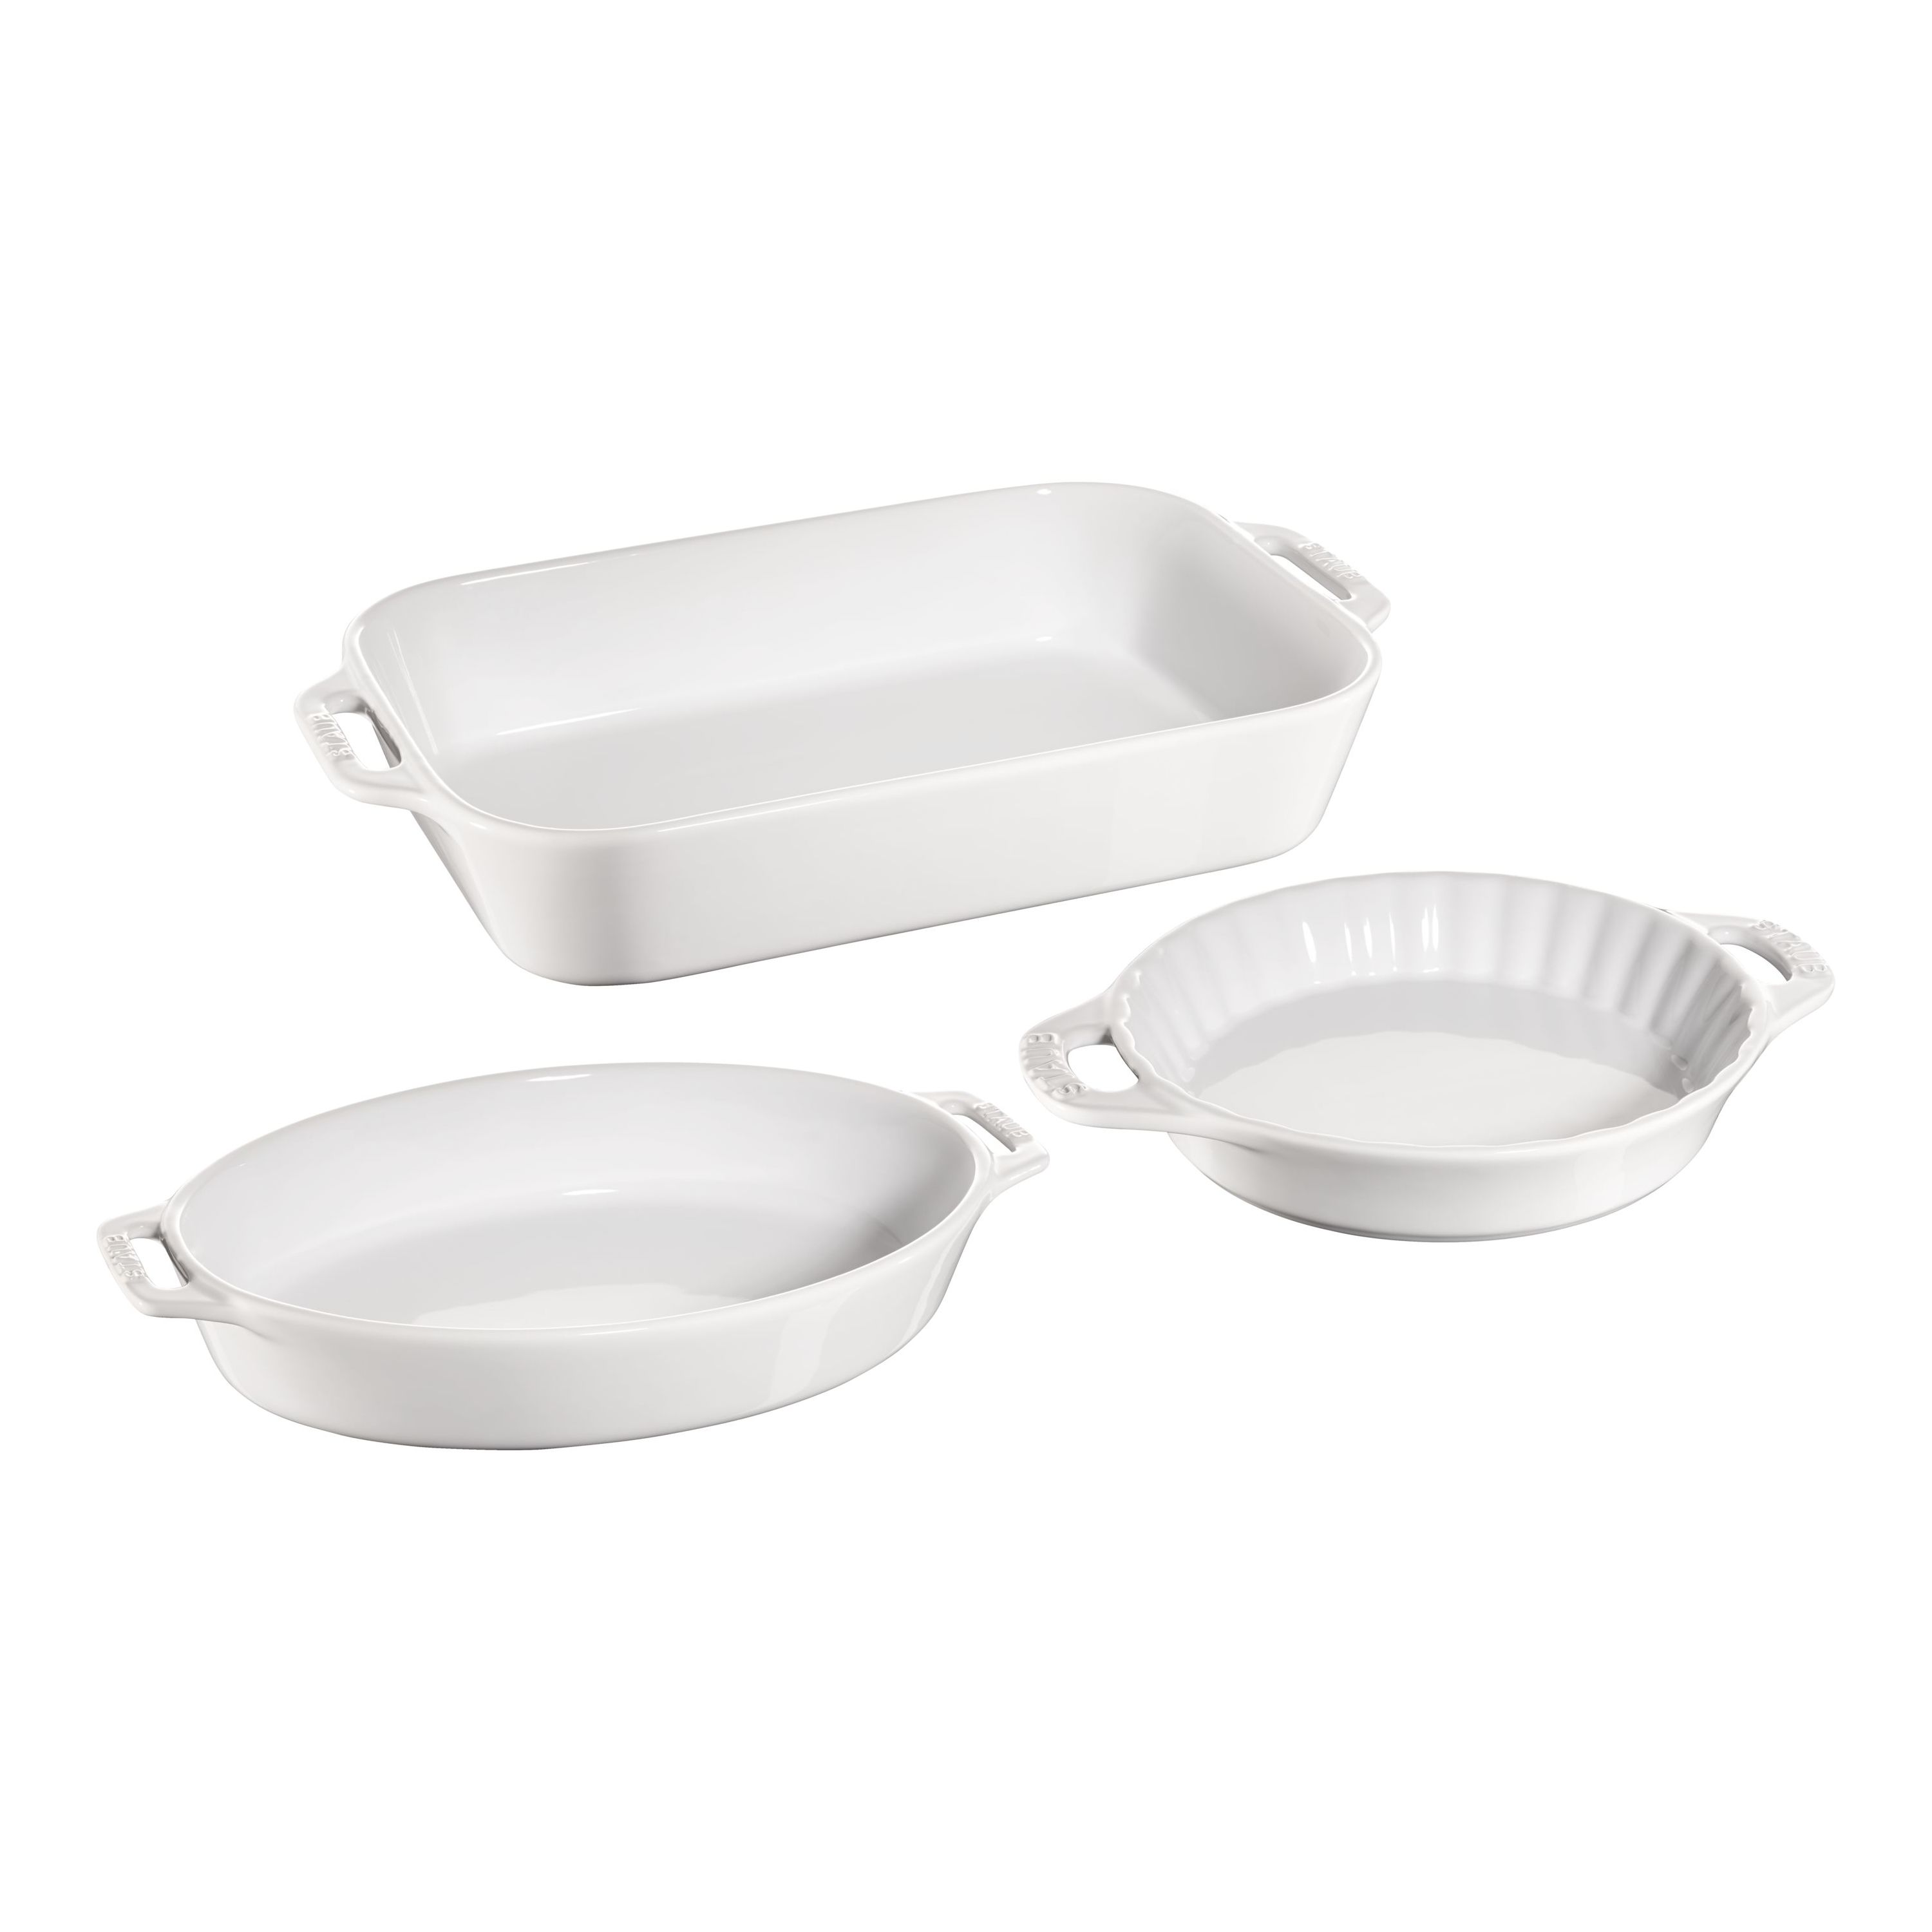 Staub Ceramics White 5-Piece Bakeware Set + Reviews